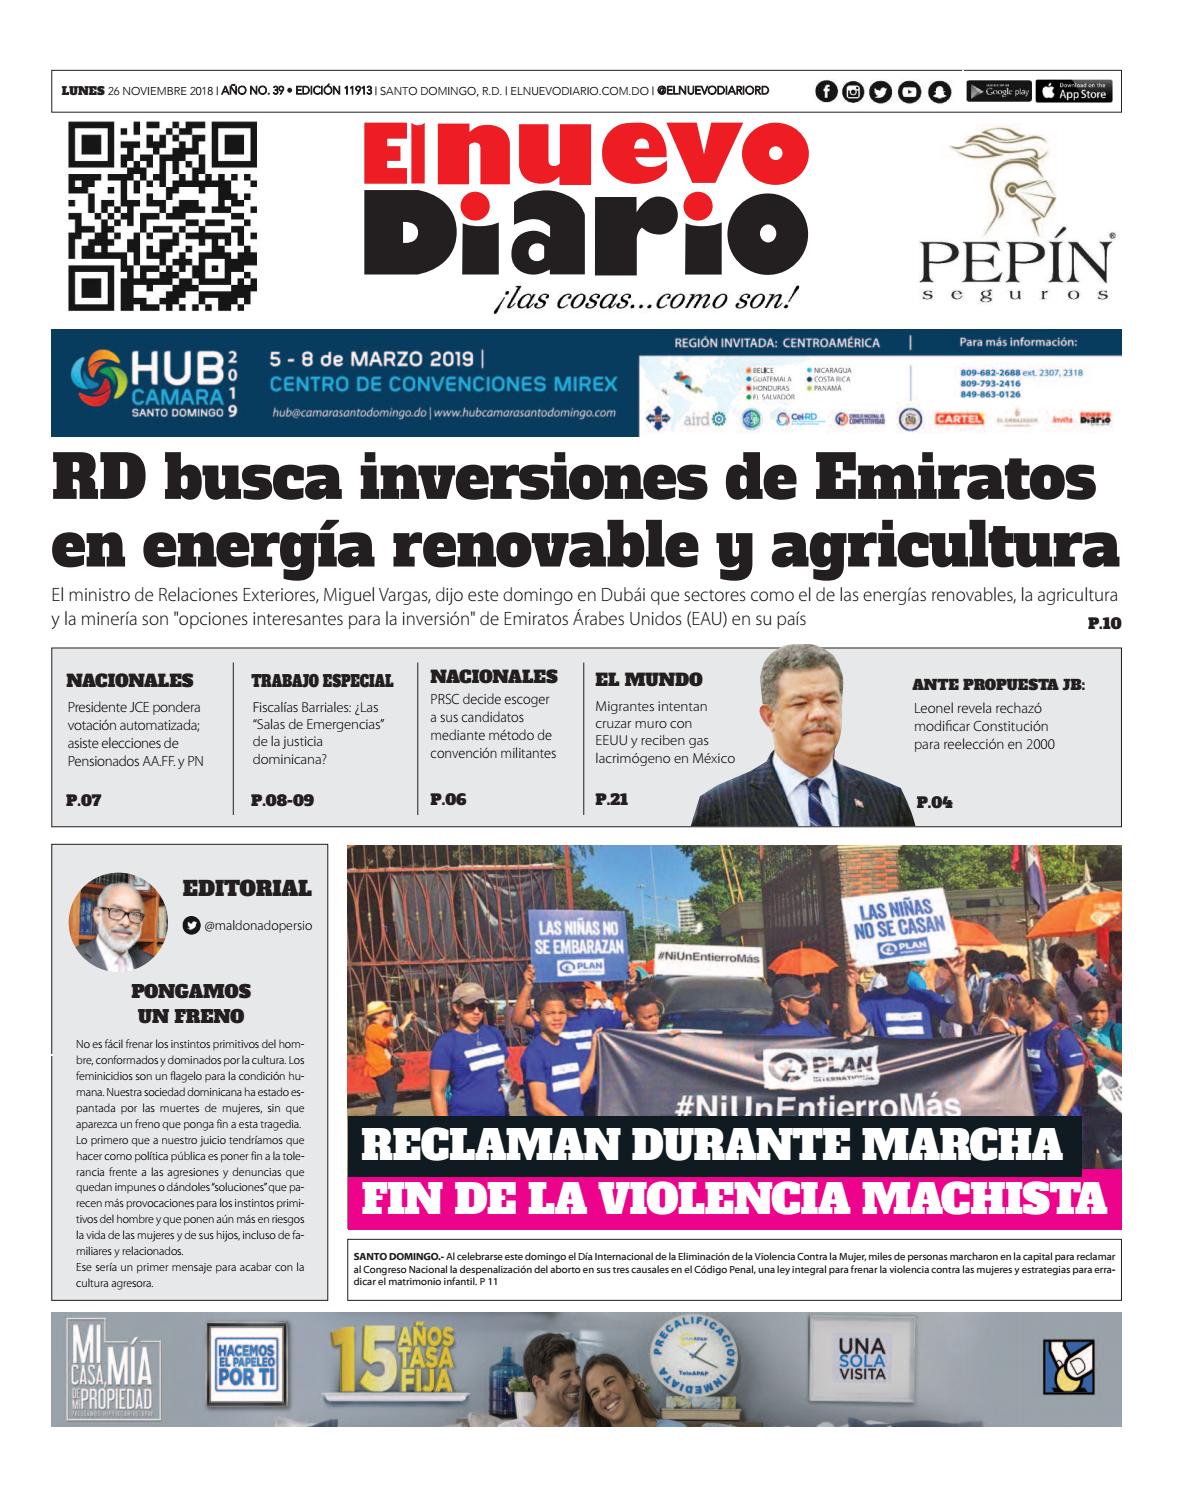 Portada Periódico El Nuevo Diario, Lunes 26 de Noviembre 2018